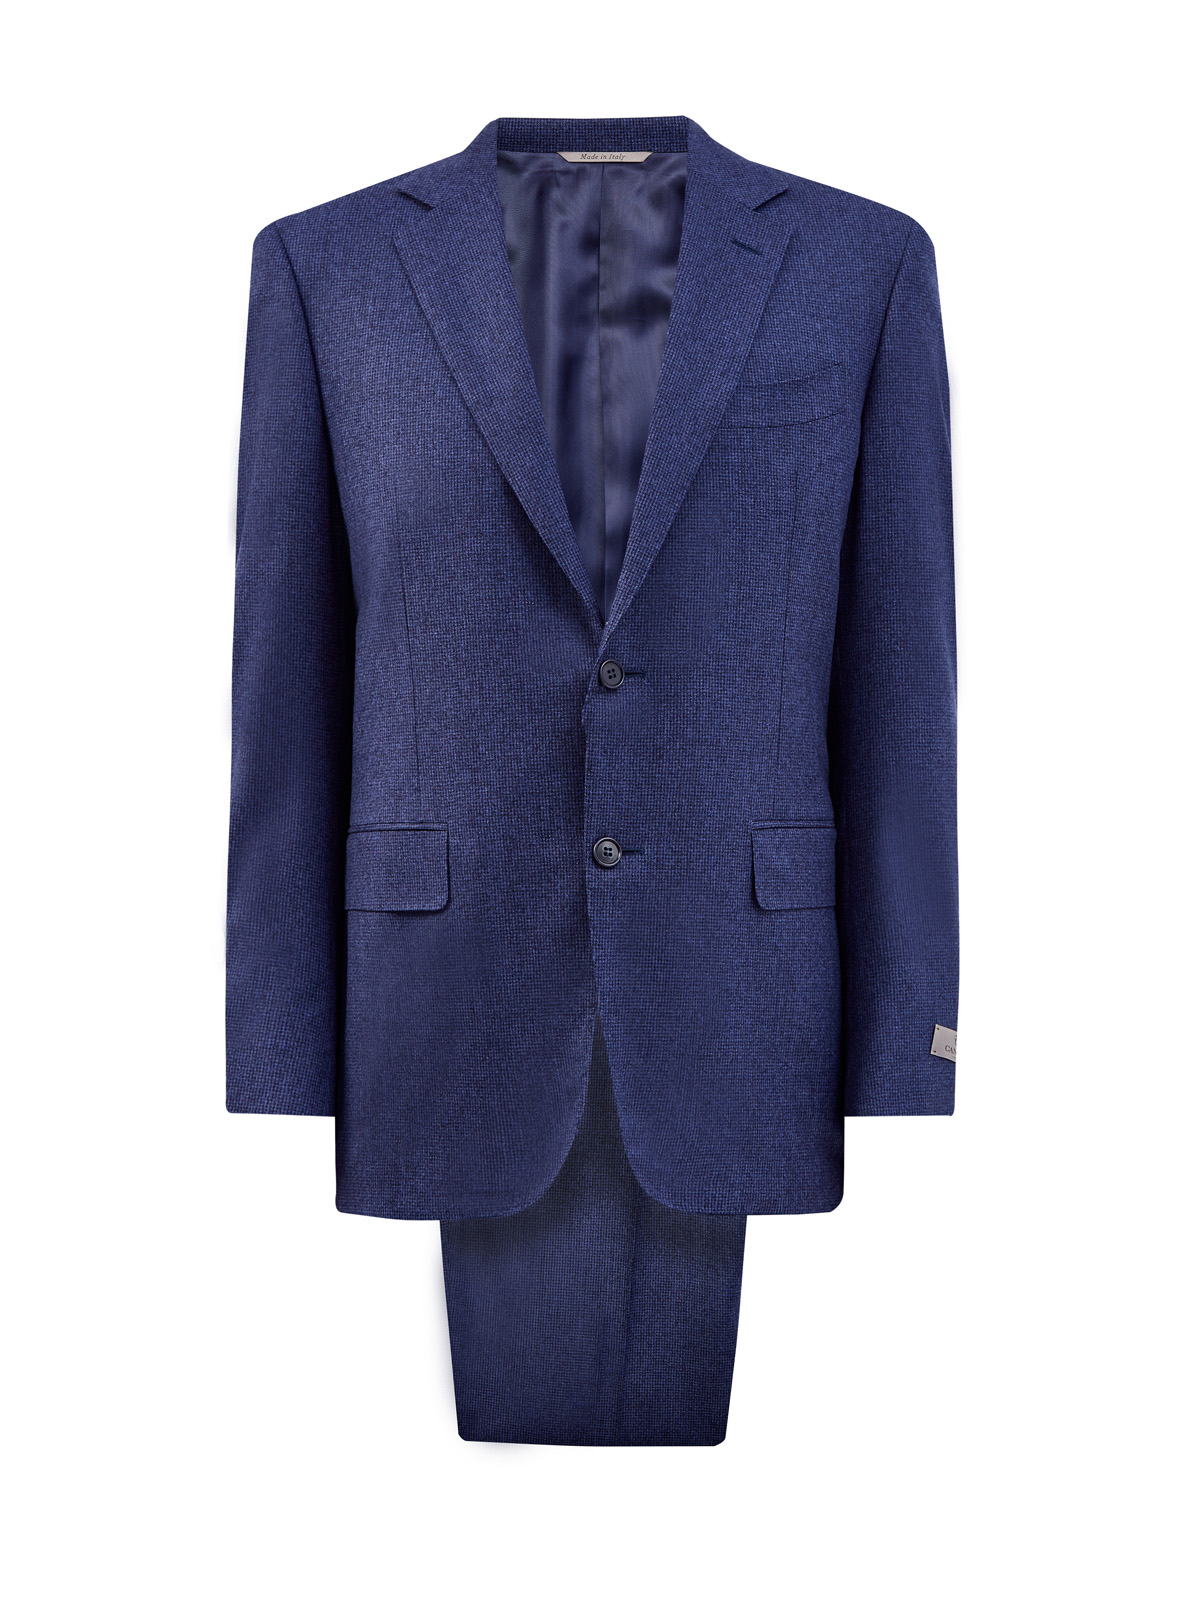 Классический костюм из шерстяной ткани в синей гамме